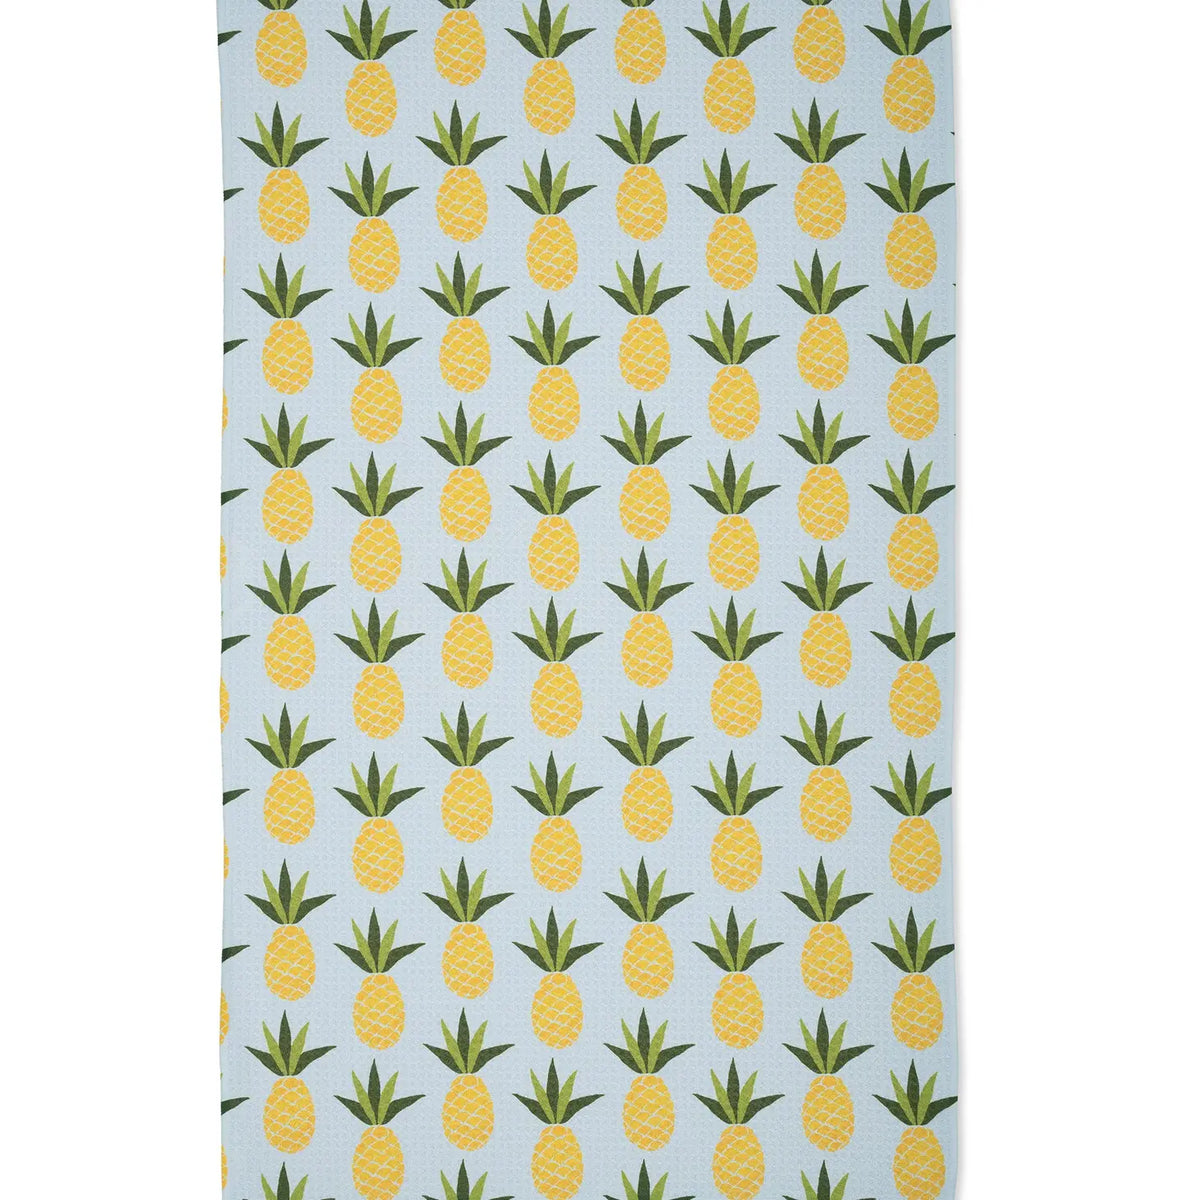 Geometry - Tea Towel Sweet Pineapple